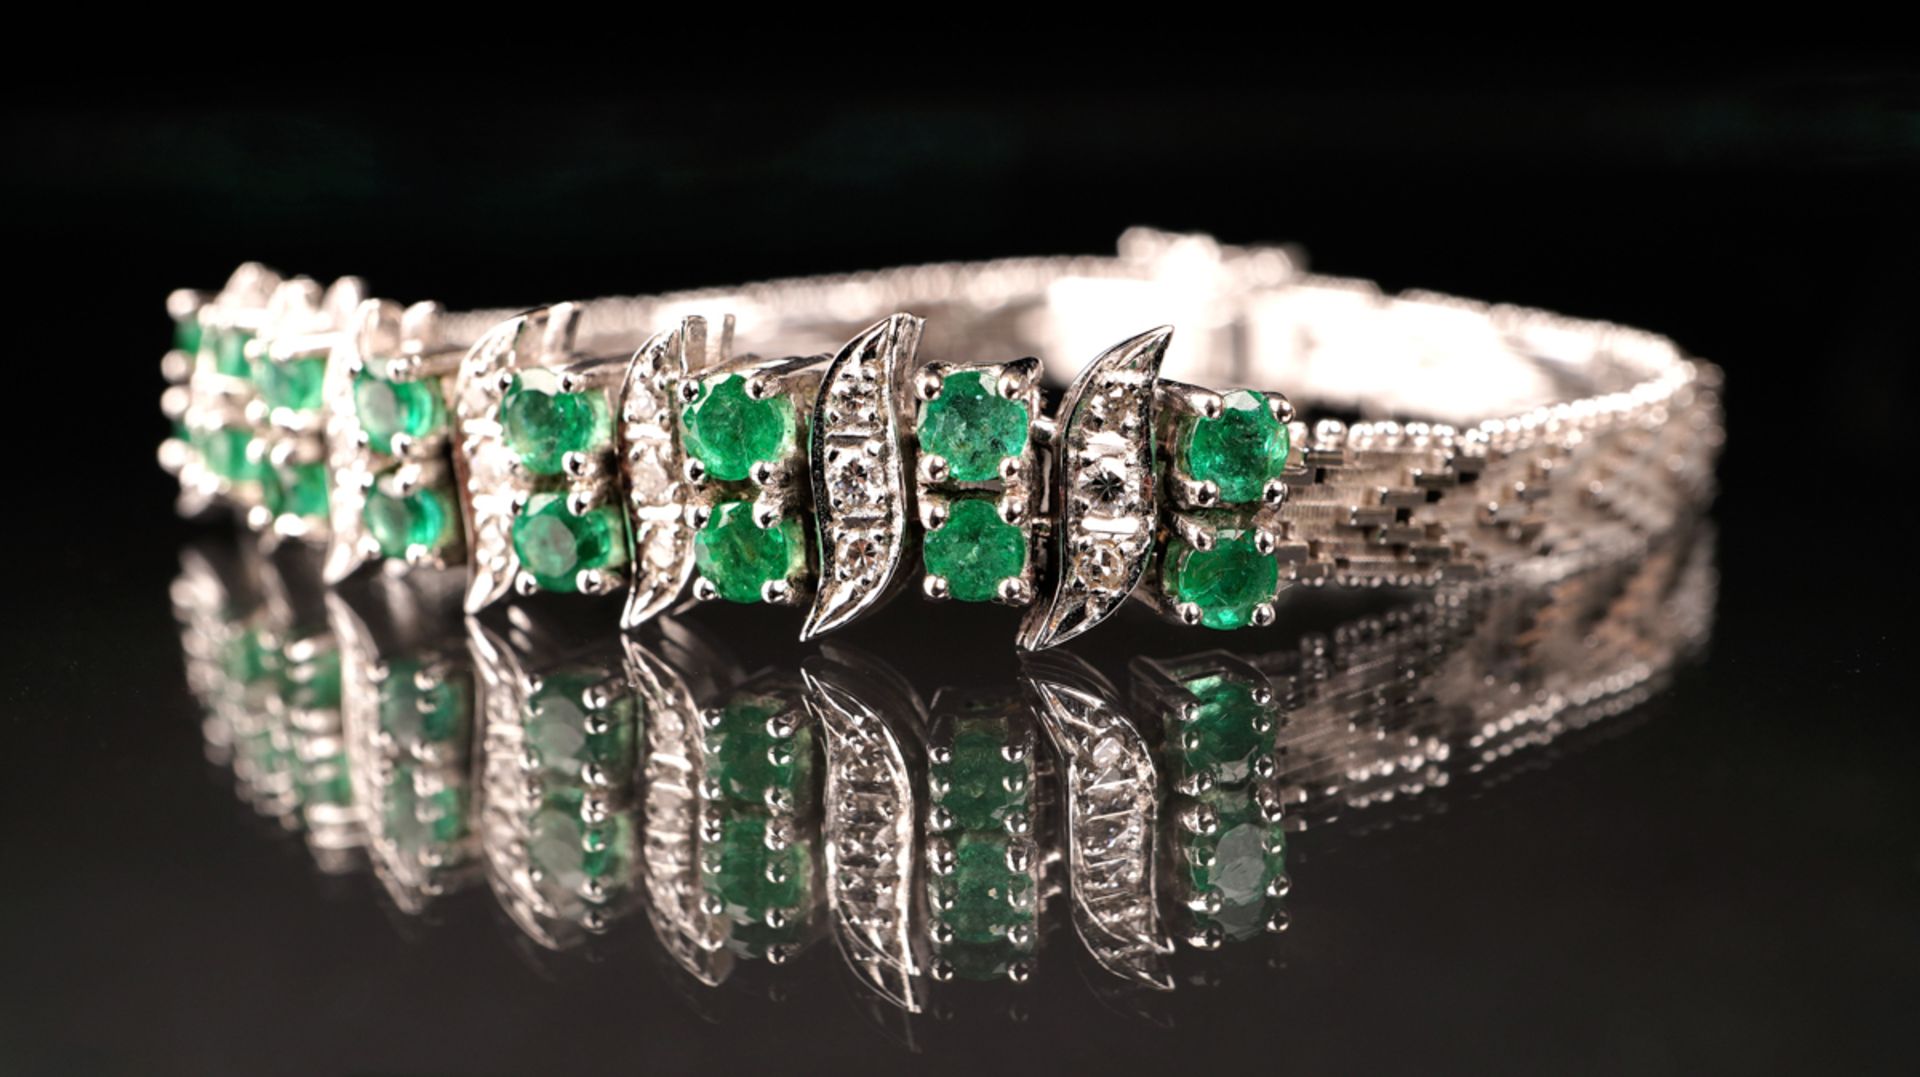 Armband mit Smaragd- und Diamantbesatz, WG 585 - Bild 4 aus 5